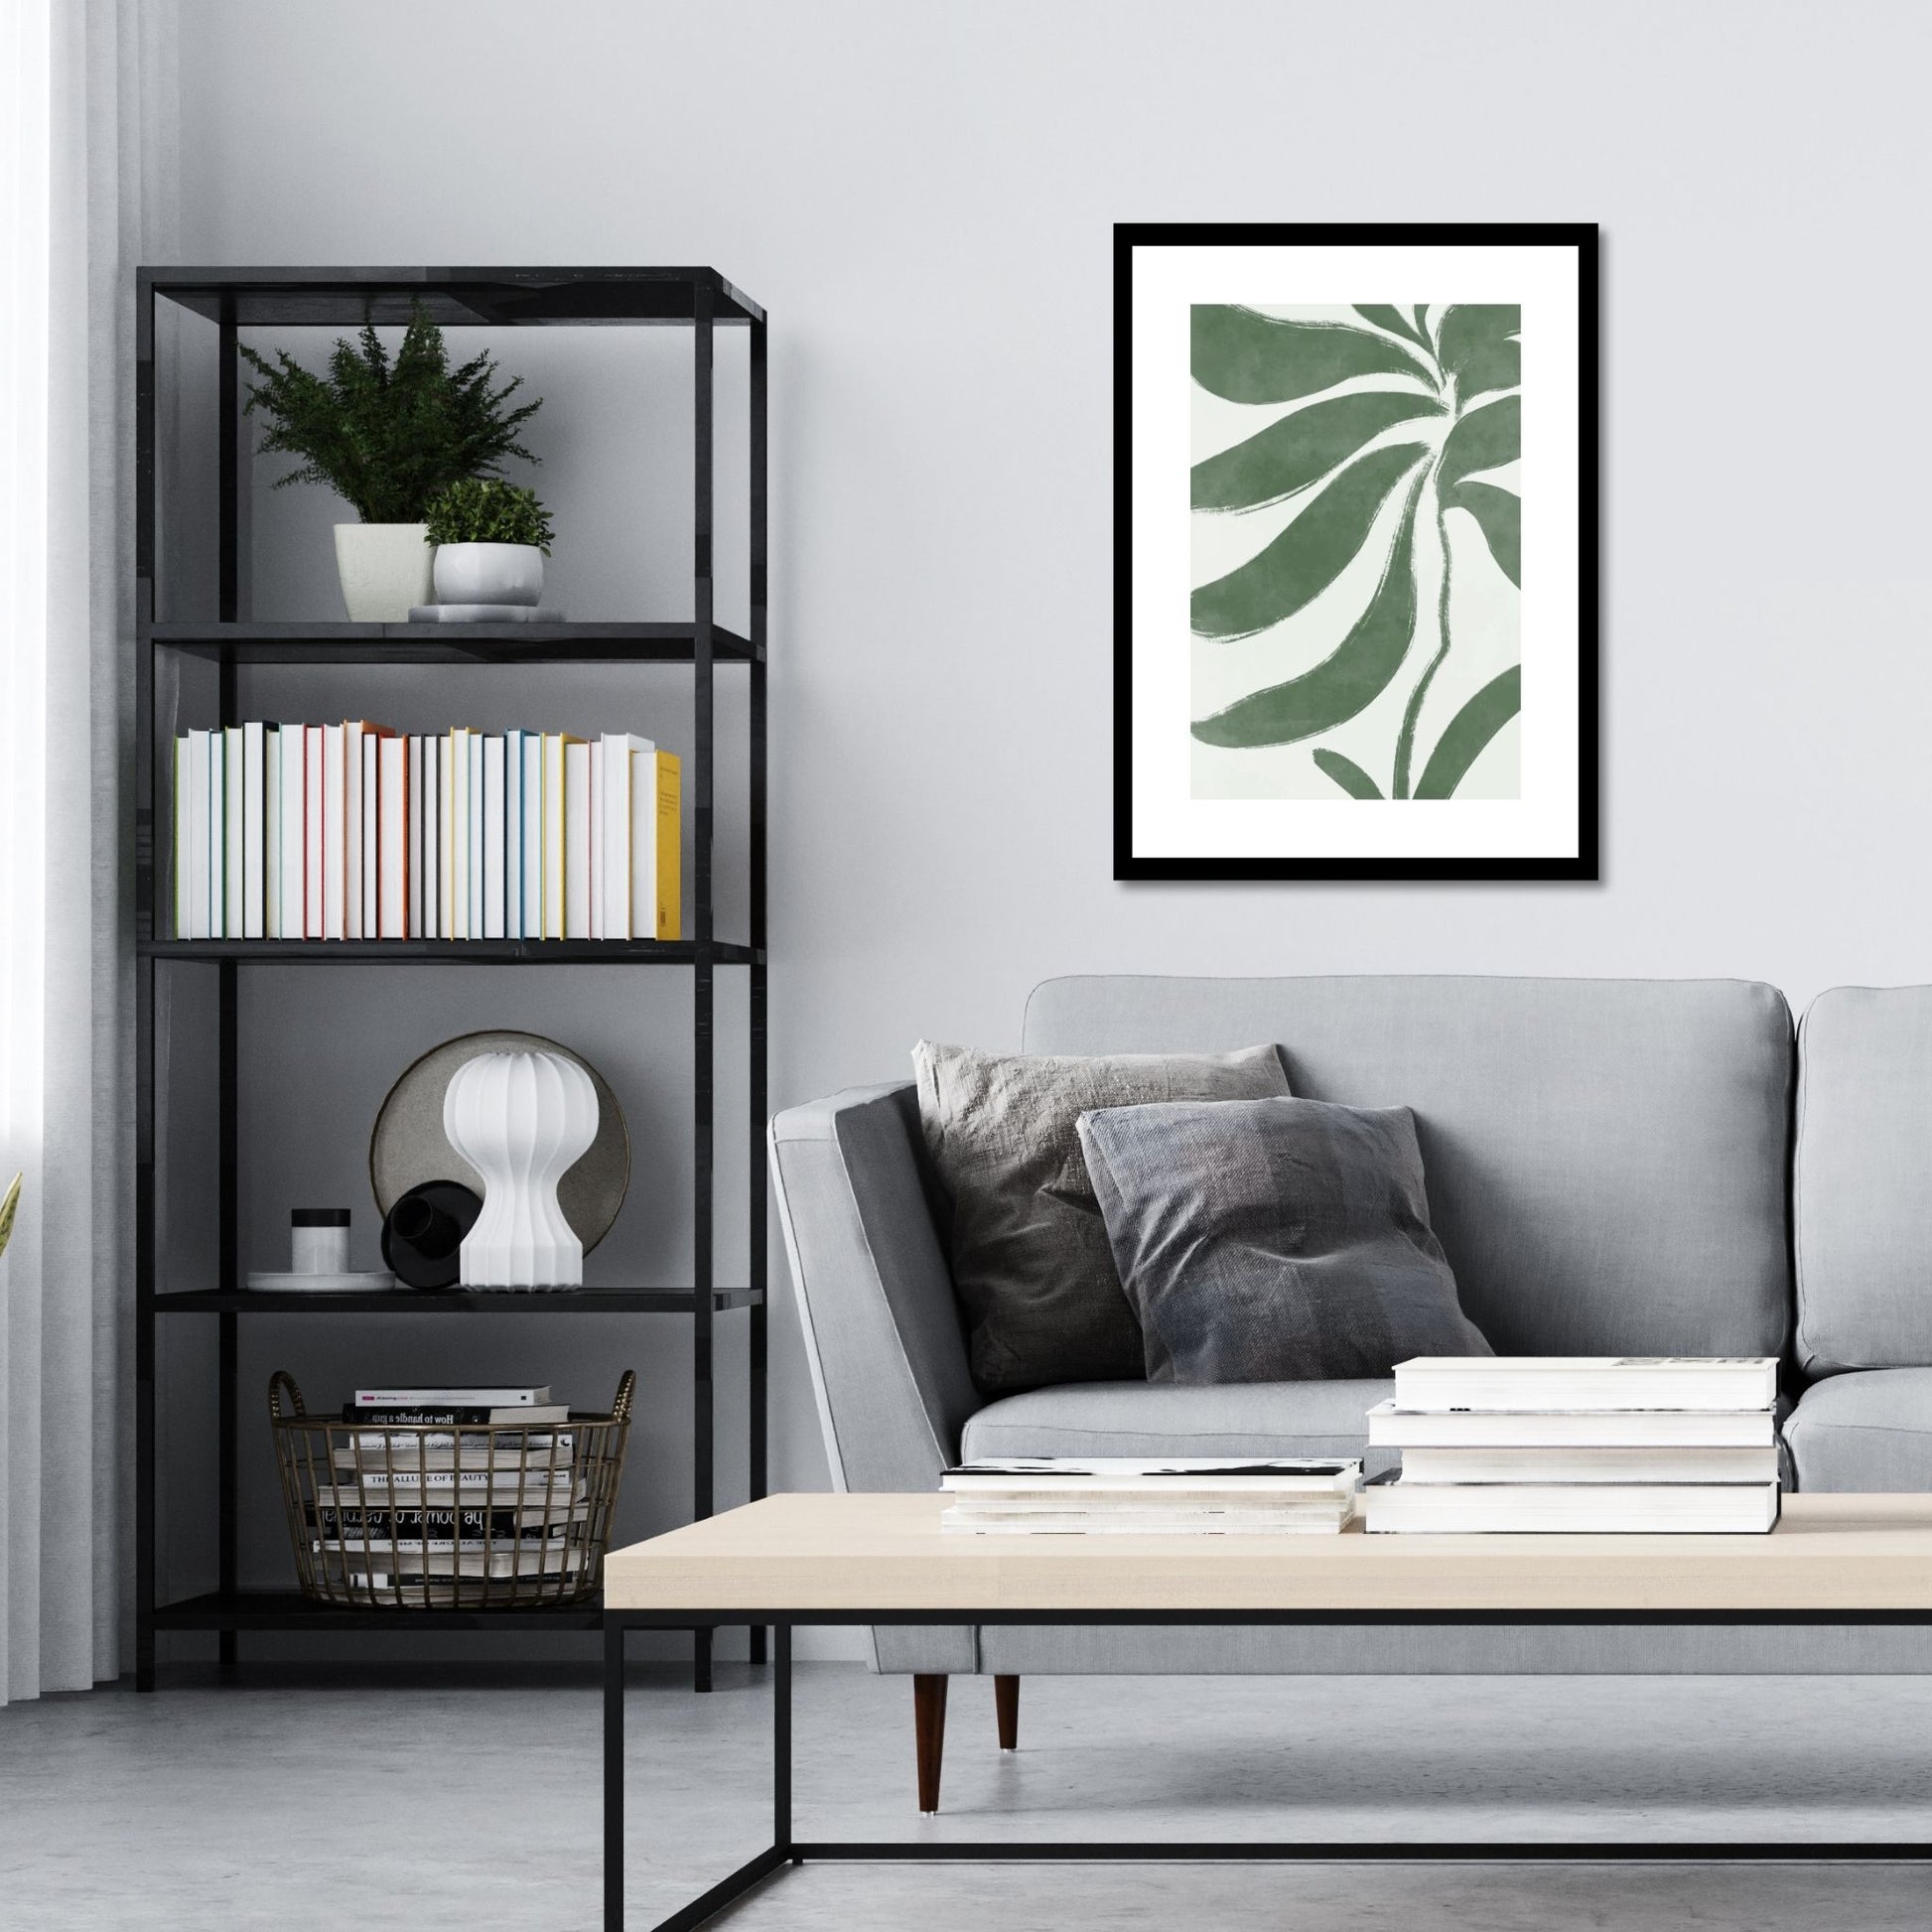 Green Abstract plakat. Med sine beroligende grønne toner og sofistikerte design, tilfører denne plakaten en følelse av ro og harmoni til ethvert rom. Illustrasjonen viser plakat i sort ramme på en vegg over en sofa.